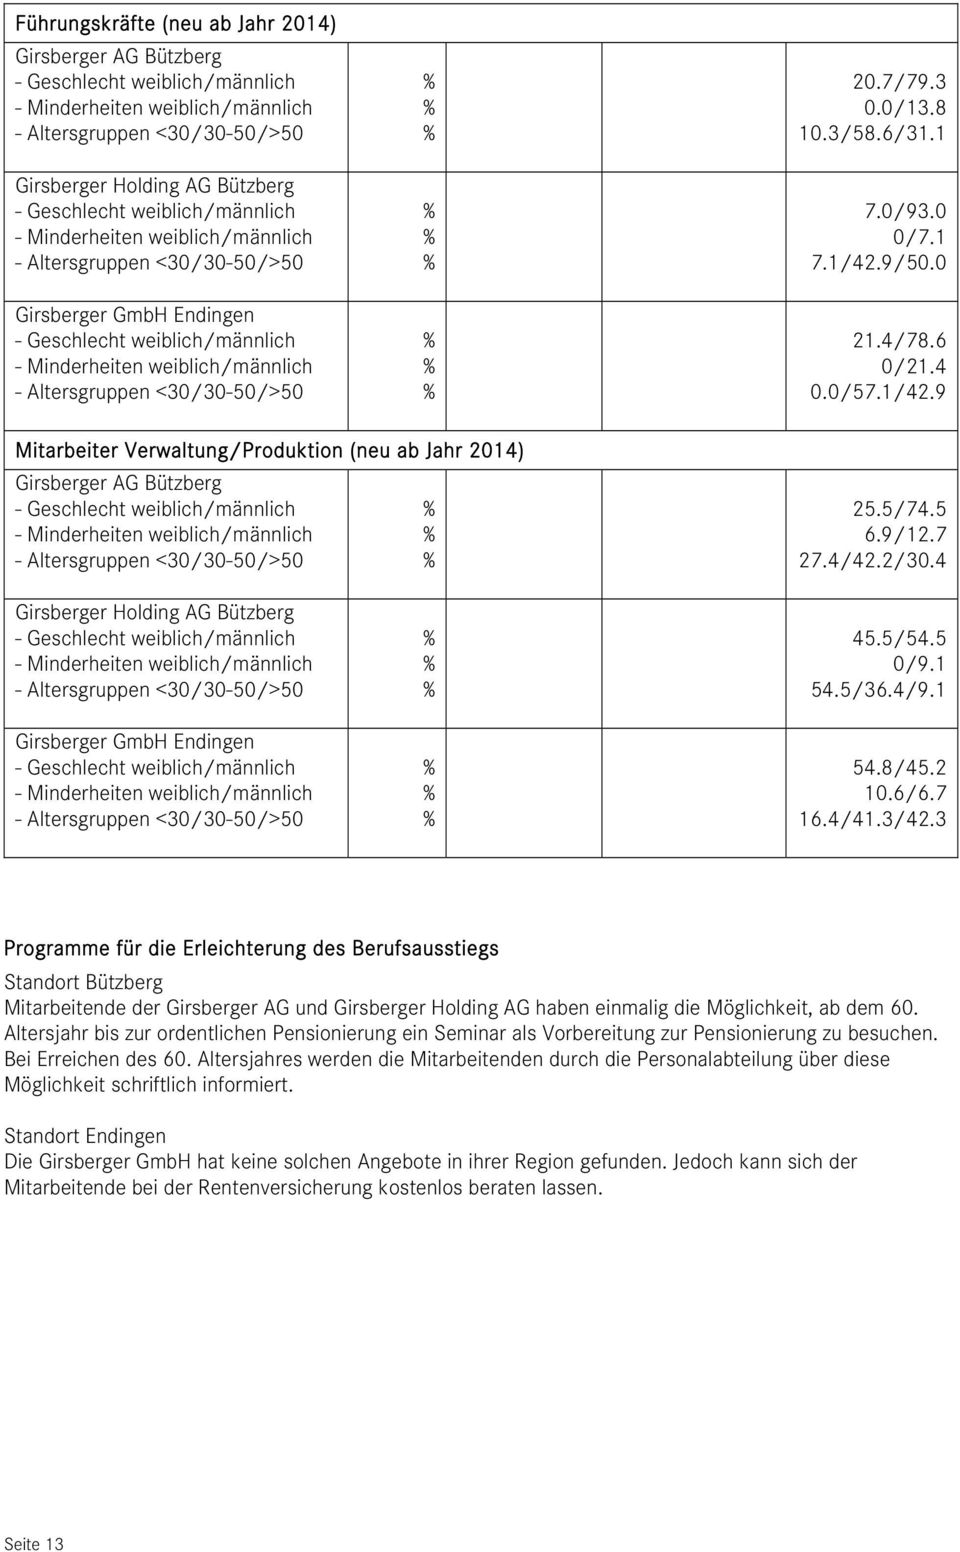 4 Girsberger Holding AG Bützberg - Altersgruppen <3/3-5/>5 Girsberger GmbH Endingen - Altersgruppen <3/3-5/>5 45.5/54.5 /9.1 54.5/36.4/9.1 54.8/45.2 1.6/6.7 16.4/41.3/42.